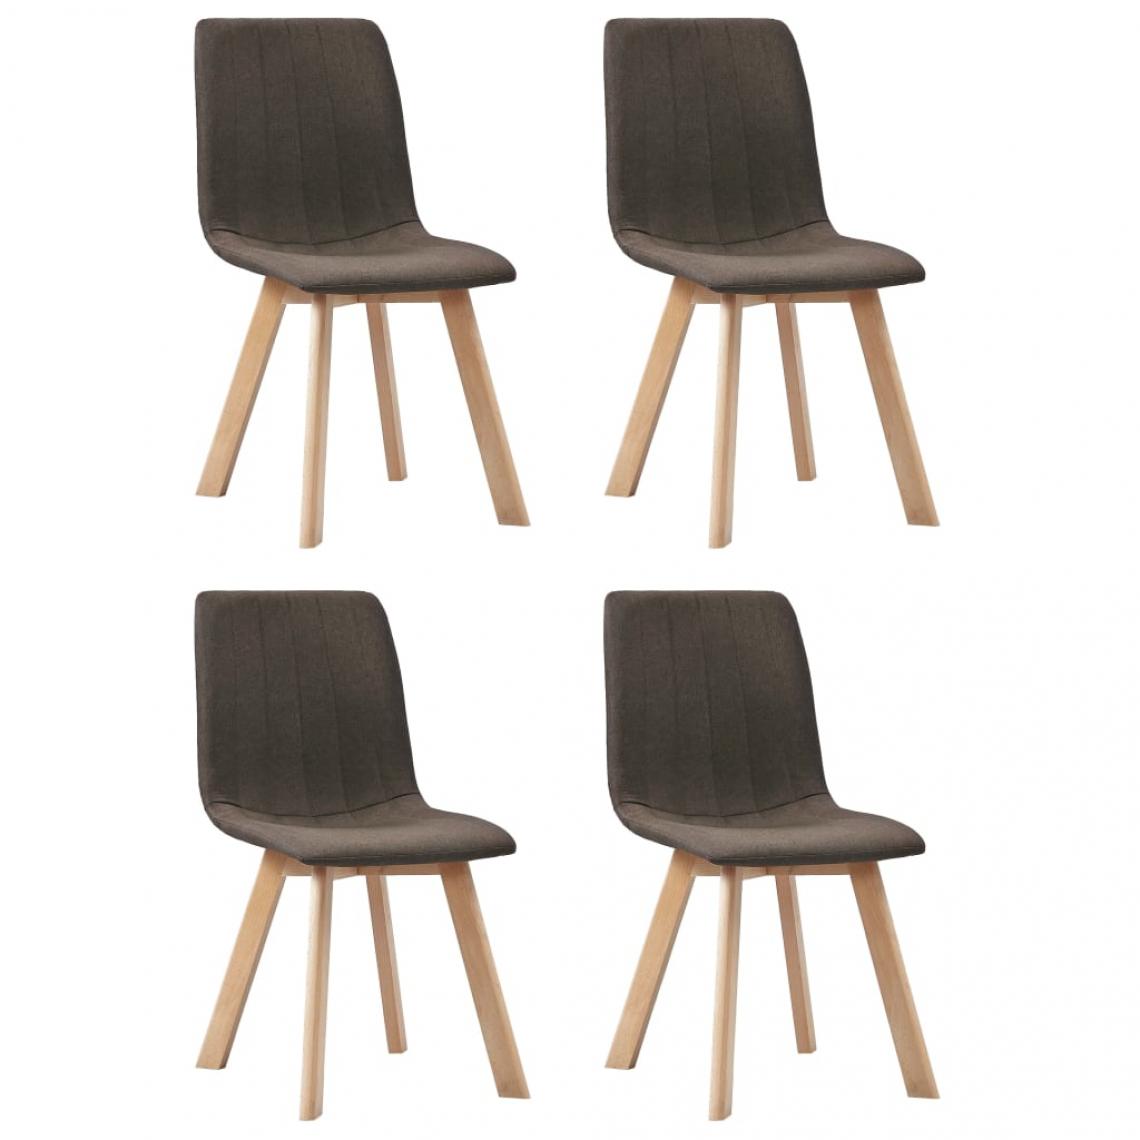 Decoshop26 - Lot de 4 chaises de salle à manger cuisine design moderne tissu marron CDS021737 - Chaises